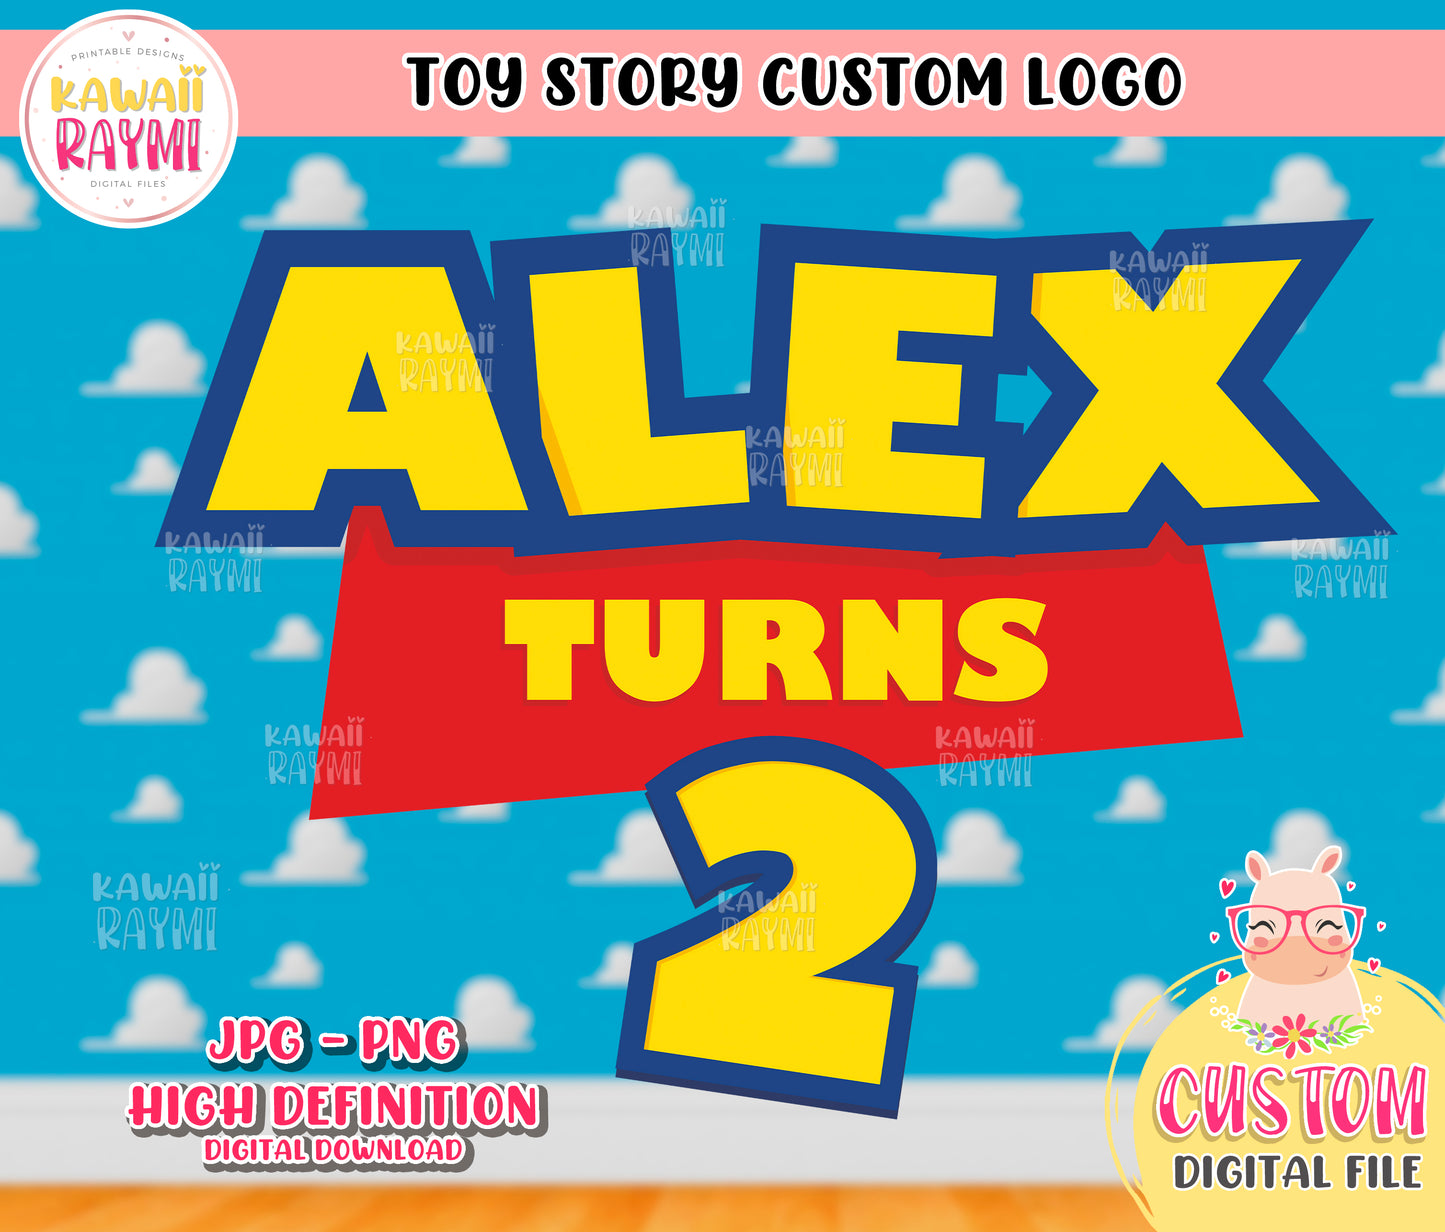 Toy story custom logo, birthday logo toy story